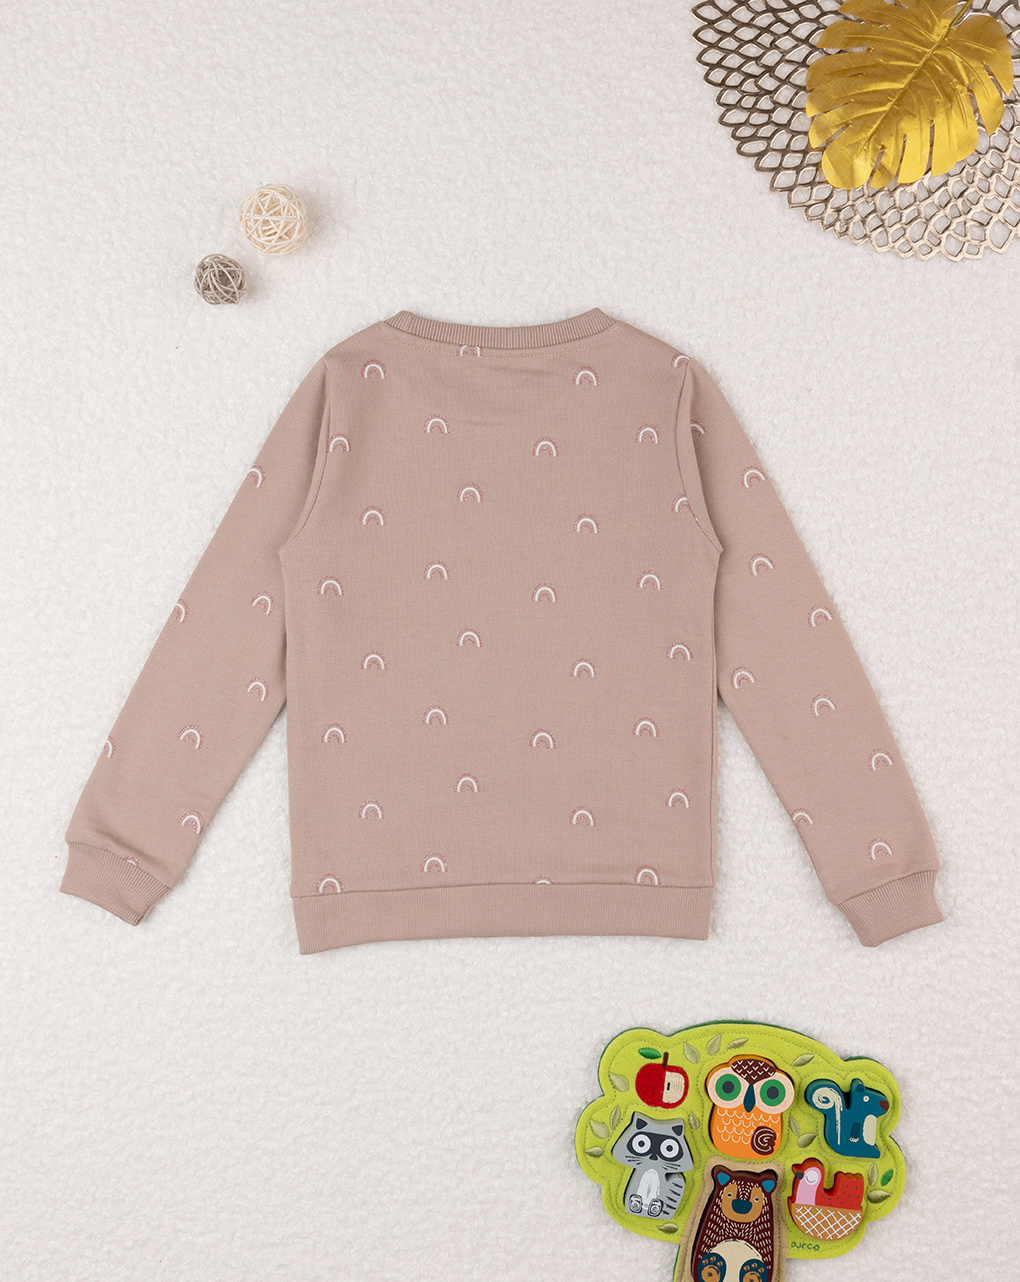 παιδική μπλούζα φούτερ μπεζ με ουράνια τόξα για κορίτσι - Prénatal